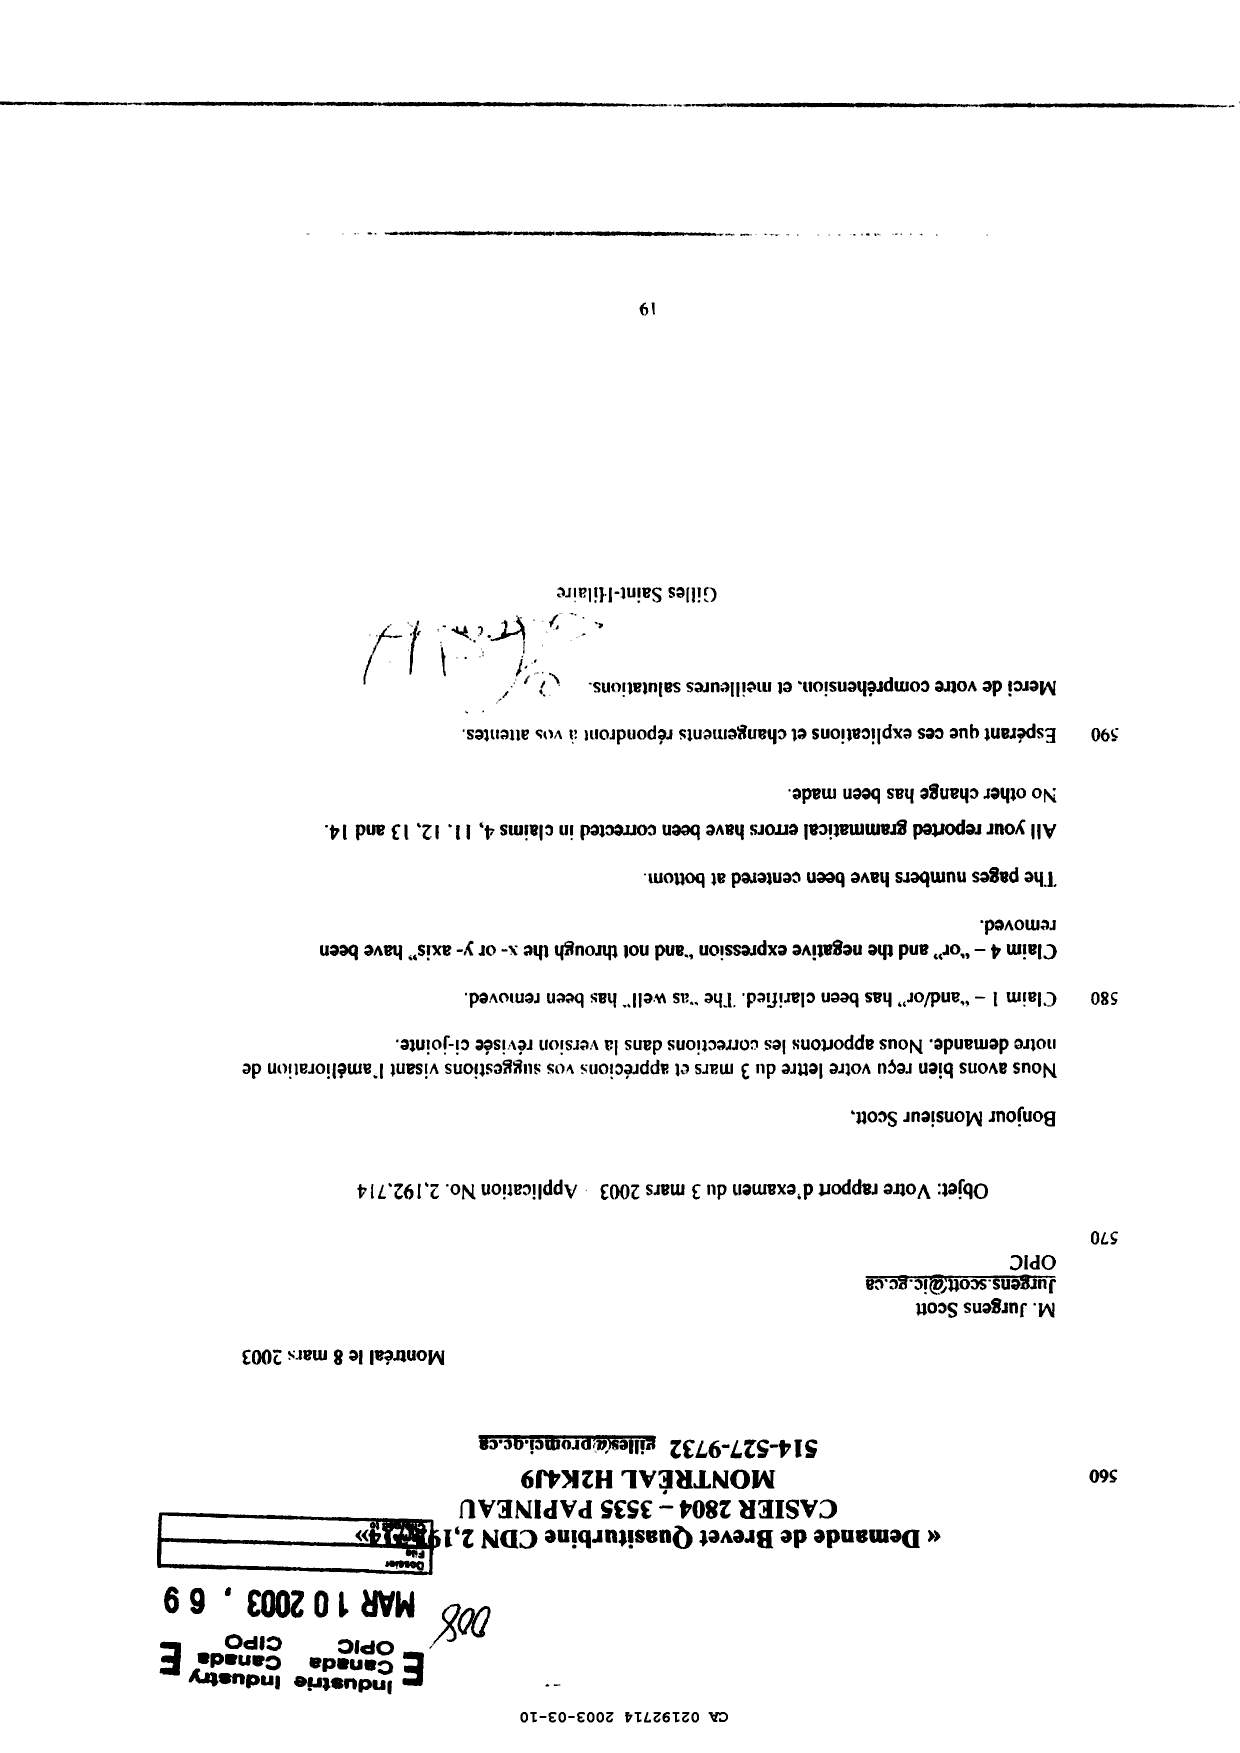 Document de brevet canadien 2192714. Poursuite-Amendment 20021210. Image 1 de 18